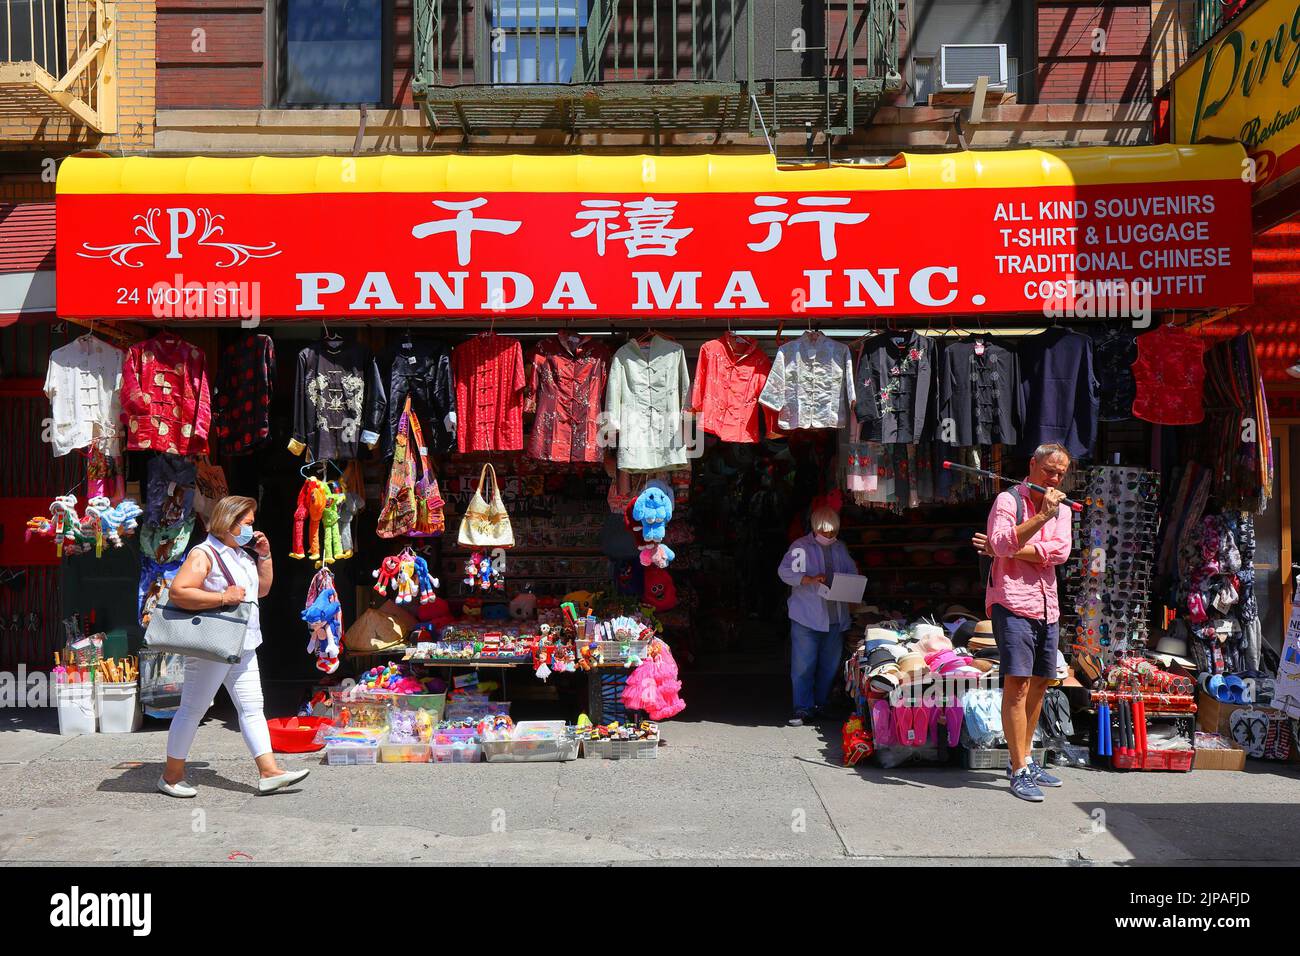 Panda Ma Inc., 24 Mott St, New York, NY. Außenfassade eines Souvenir-, Gepäck- und Bekleidungsladens in Manhattan, Chinatown. Stockfoto